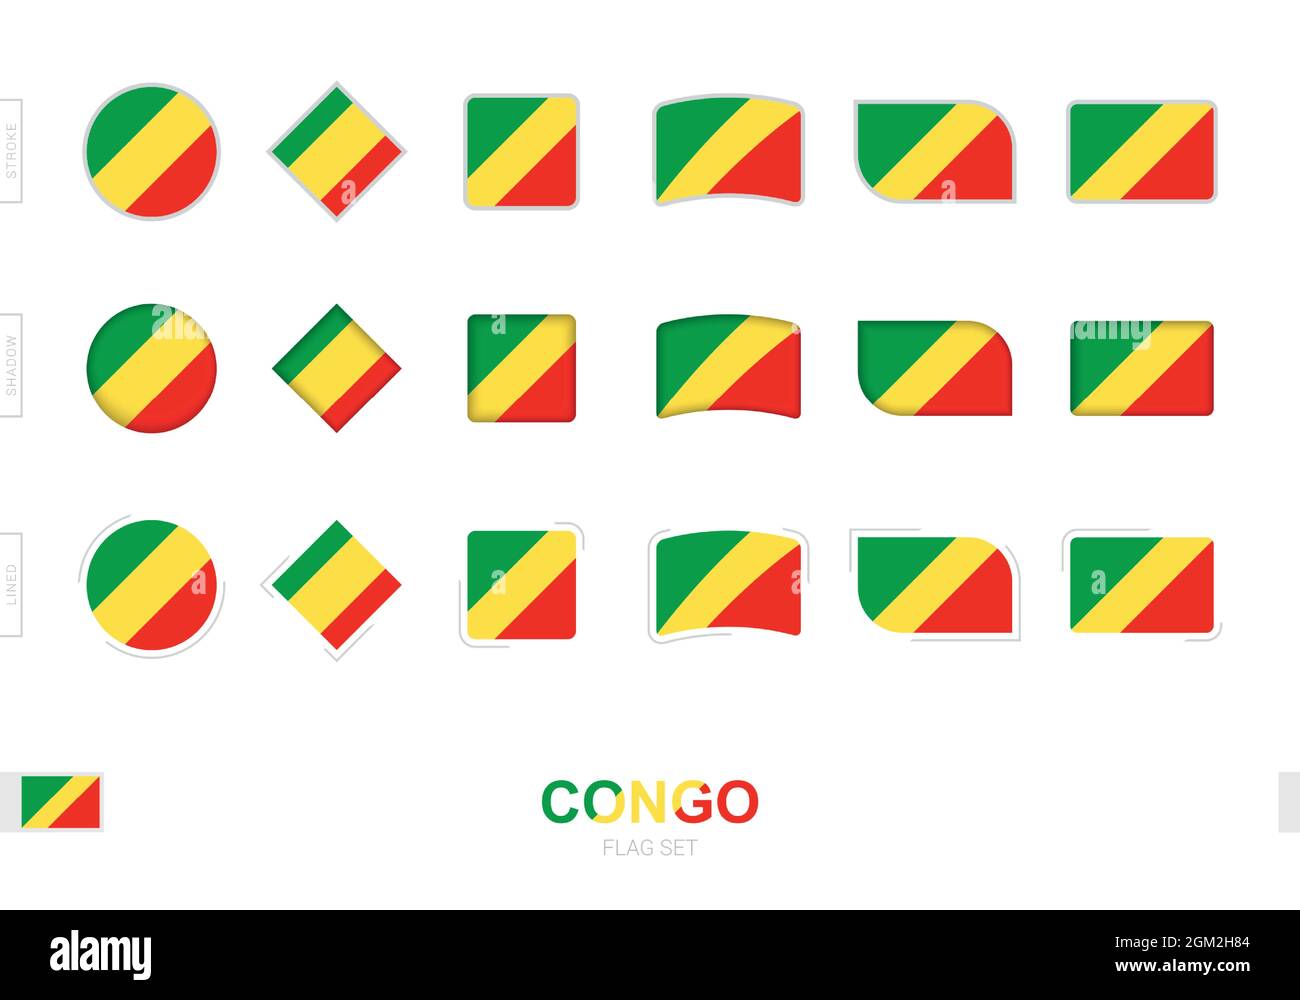 Drapeau du Congo, drapeaux simples du Congo avec trois effets différents. Illustration vectorielle. Illustration de Vecteur